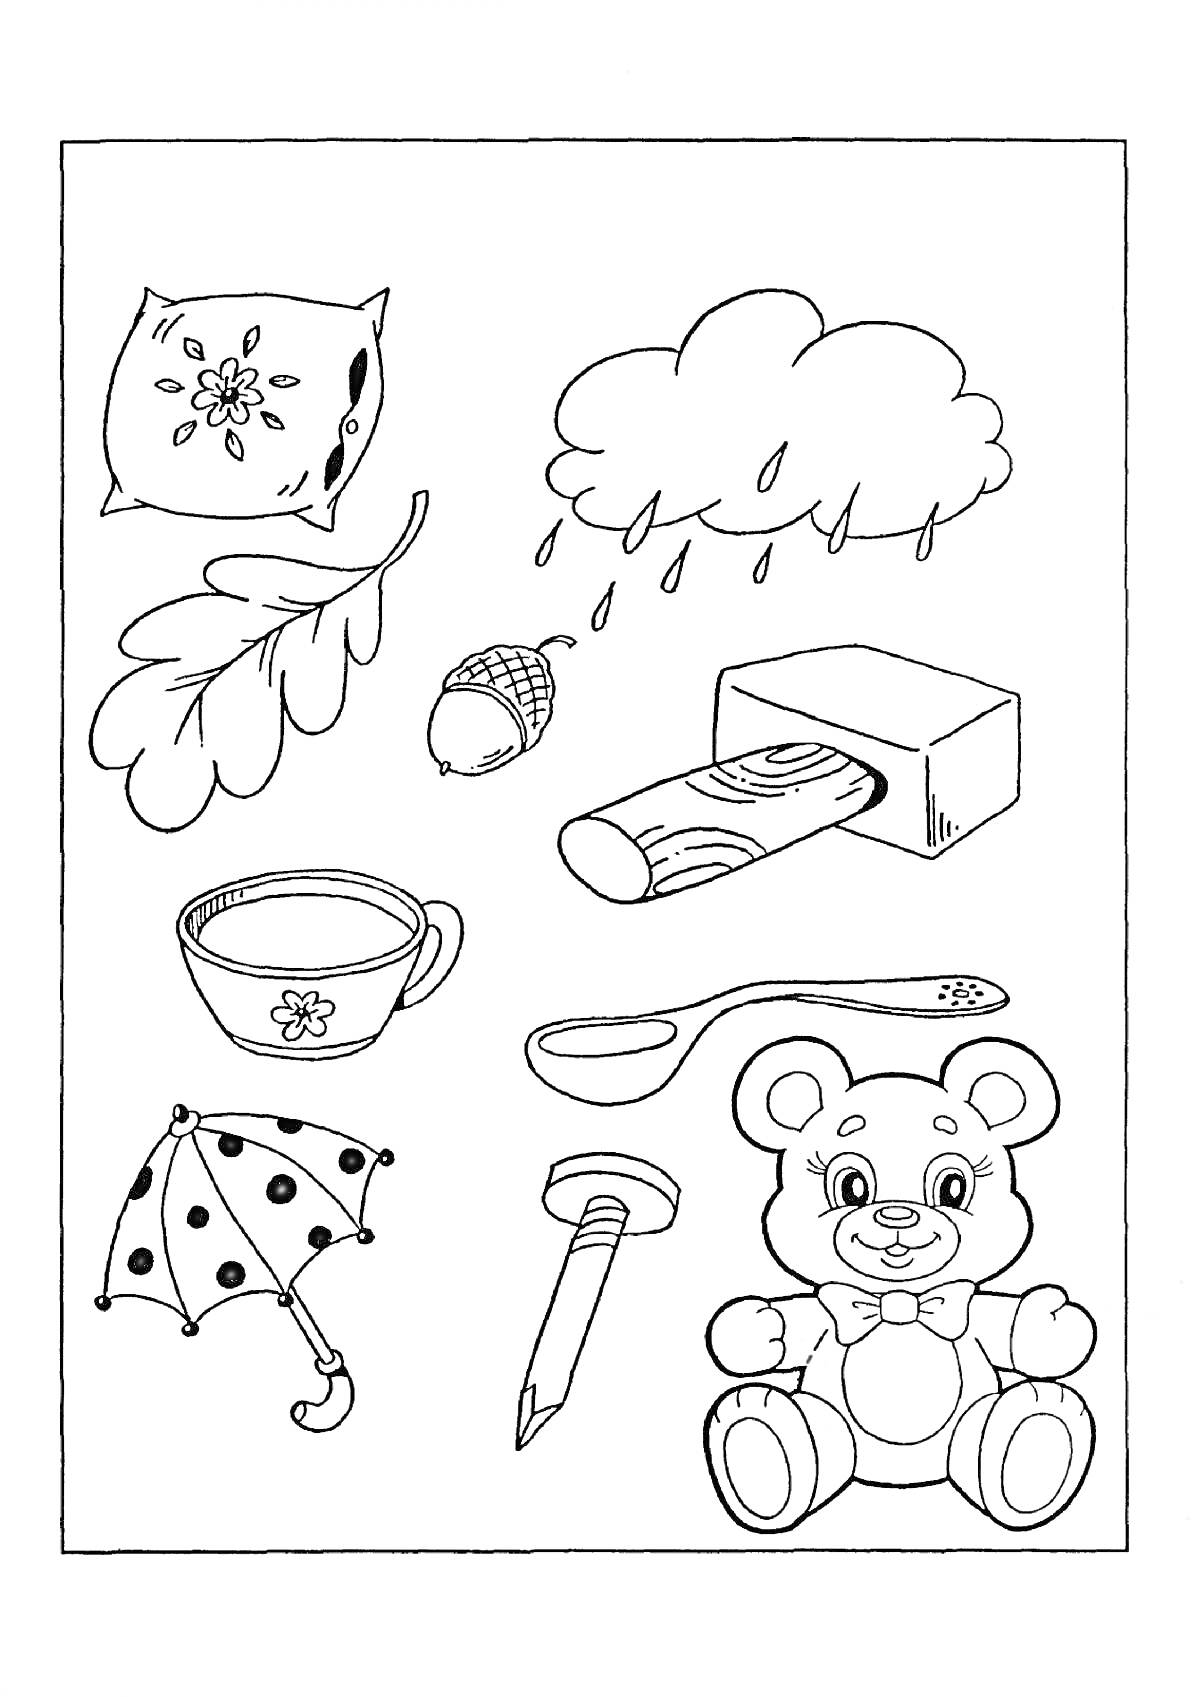 На раскраске изображено: Подушка, Дубовый лист, Дождь, Бревно, Коробка, Зубная щетка, Ложка, Медведь, Развивающие, Для детей